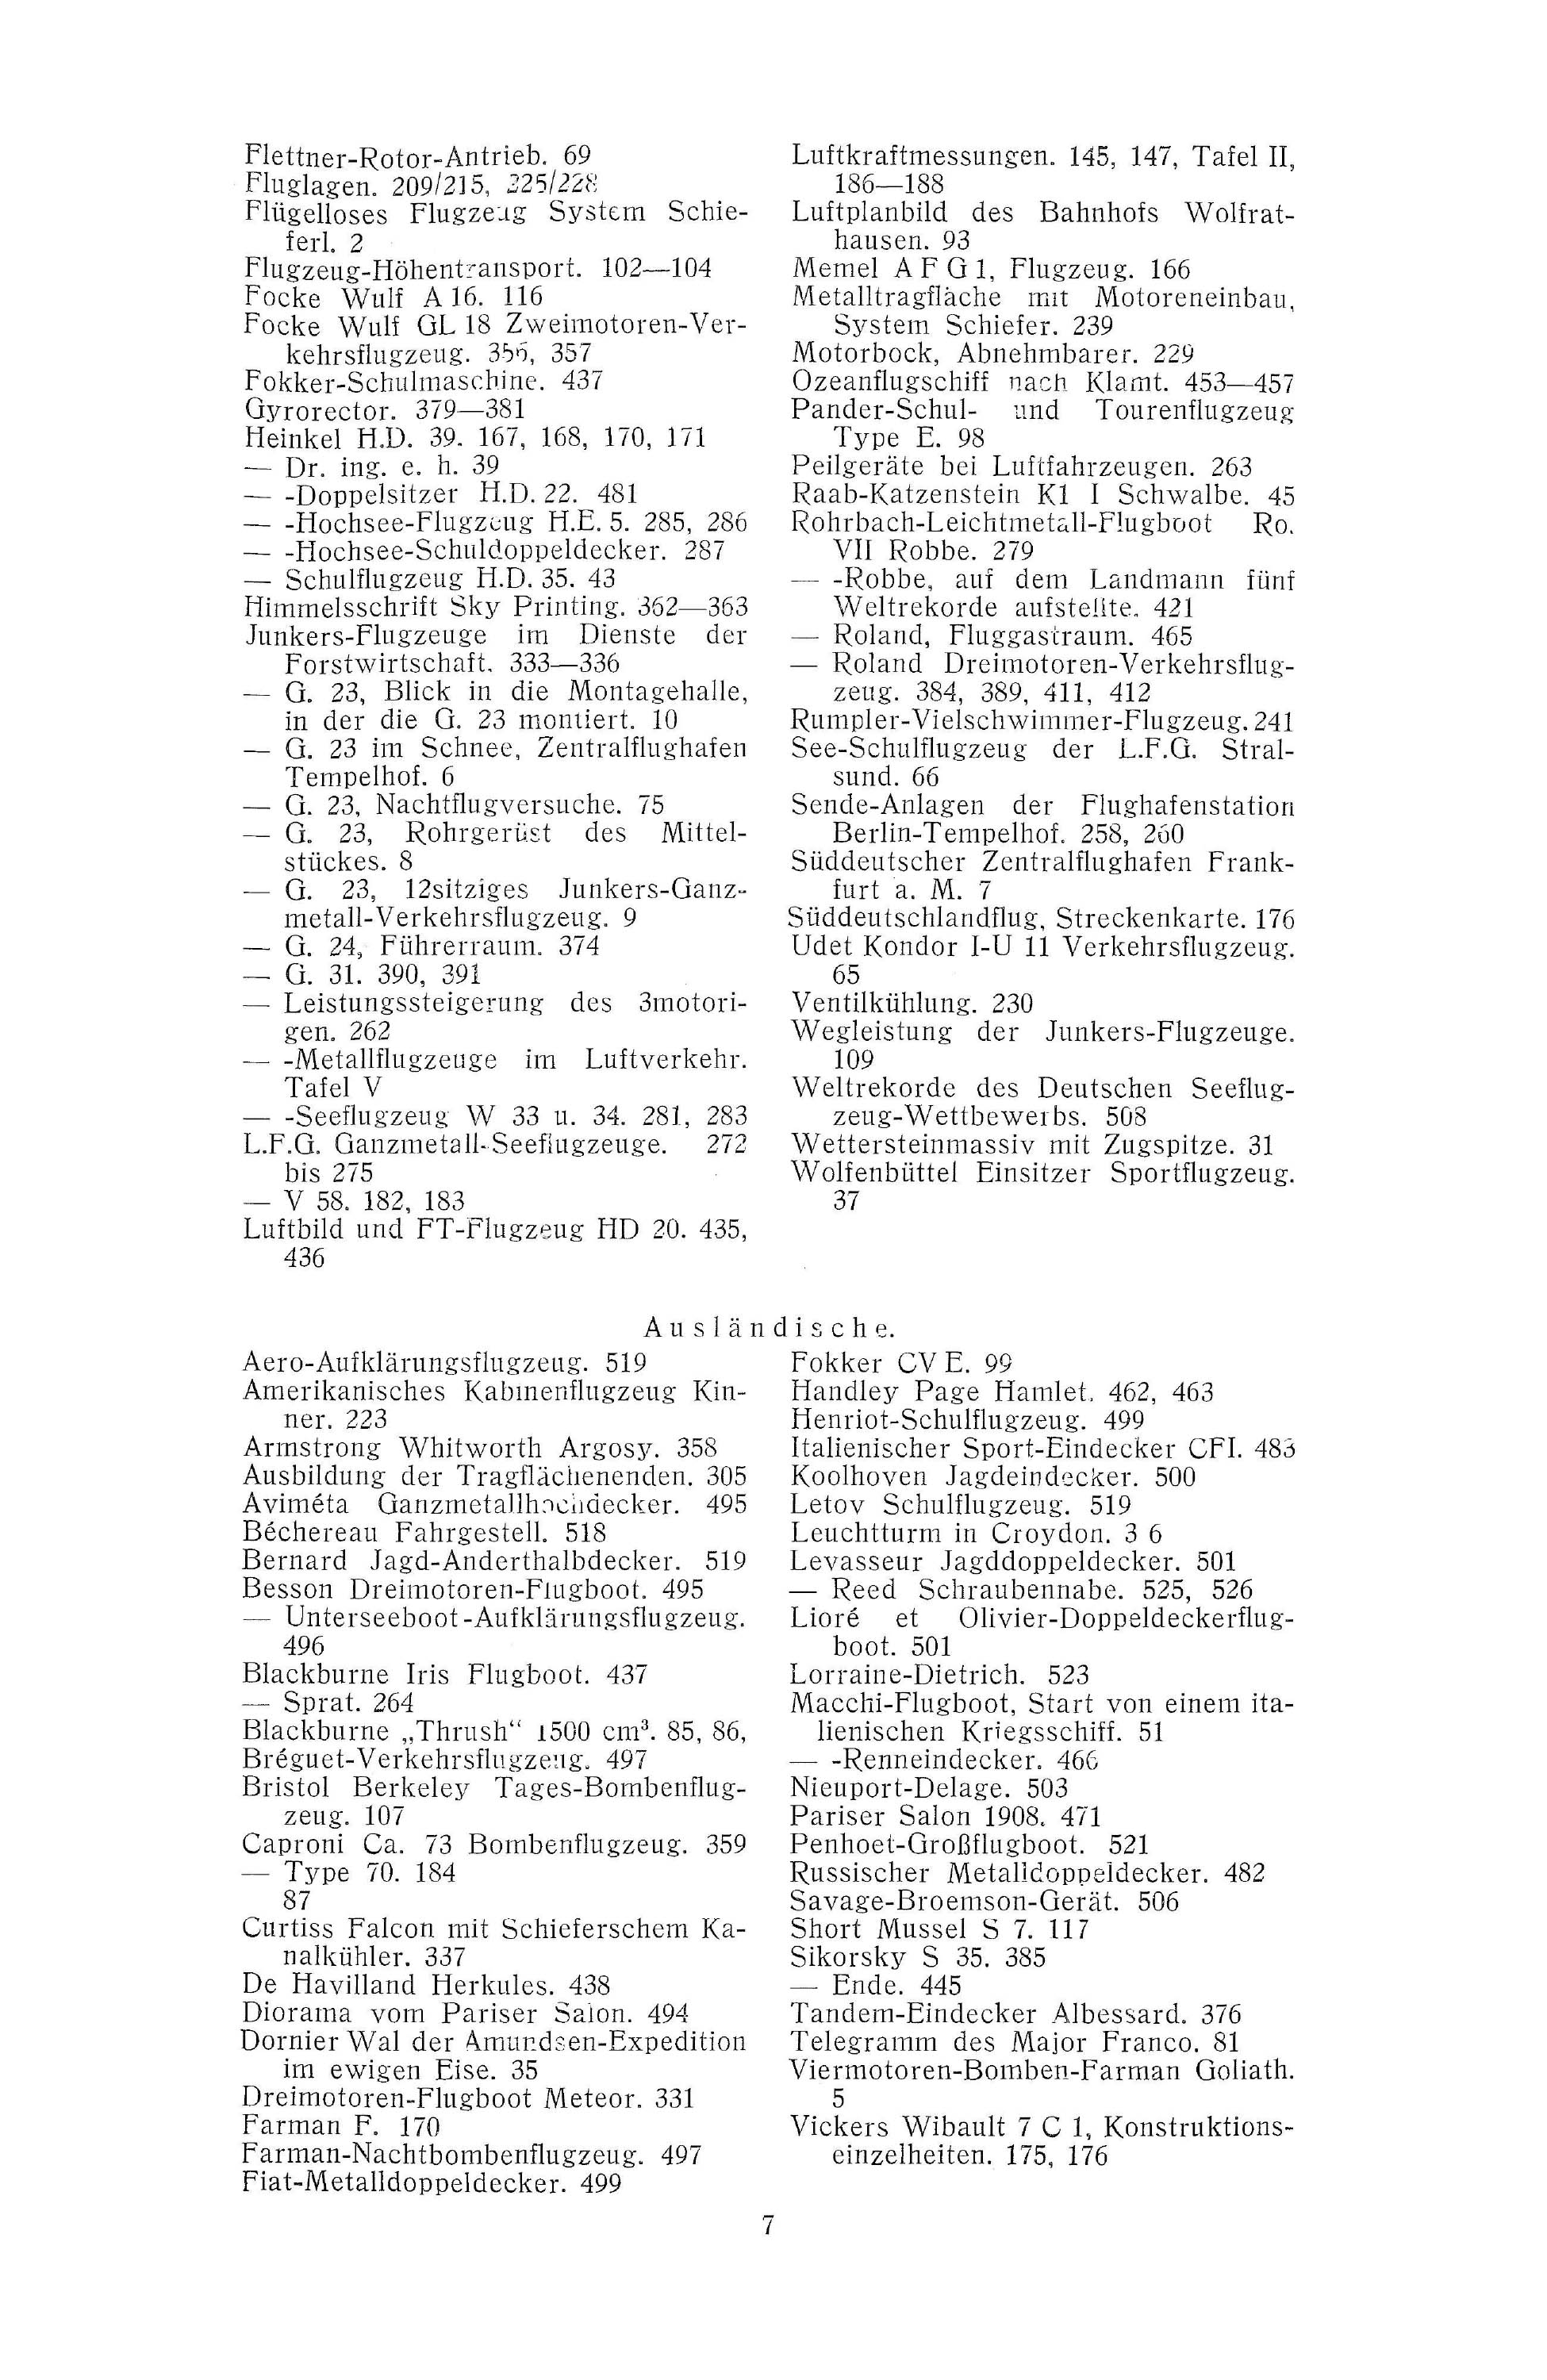 Sachregister und Inhaltsverzeichnis der Zeitschrift Flugsport 1926